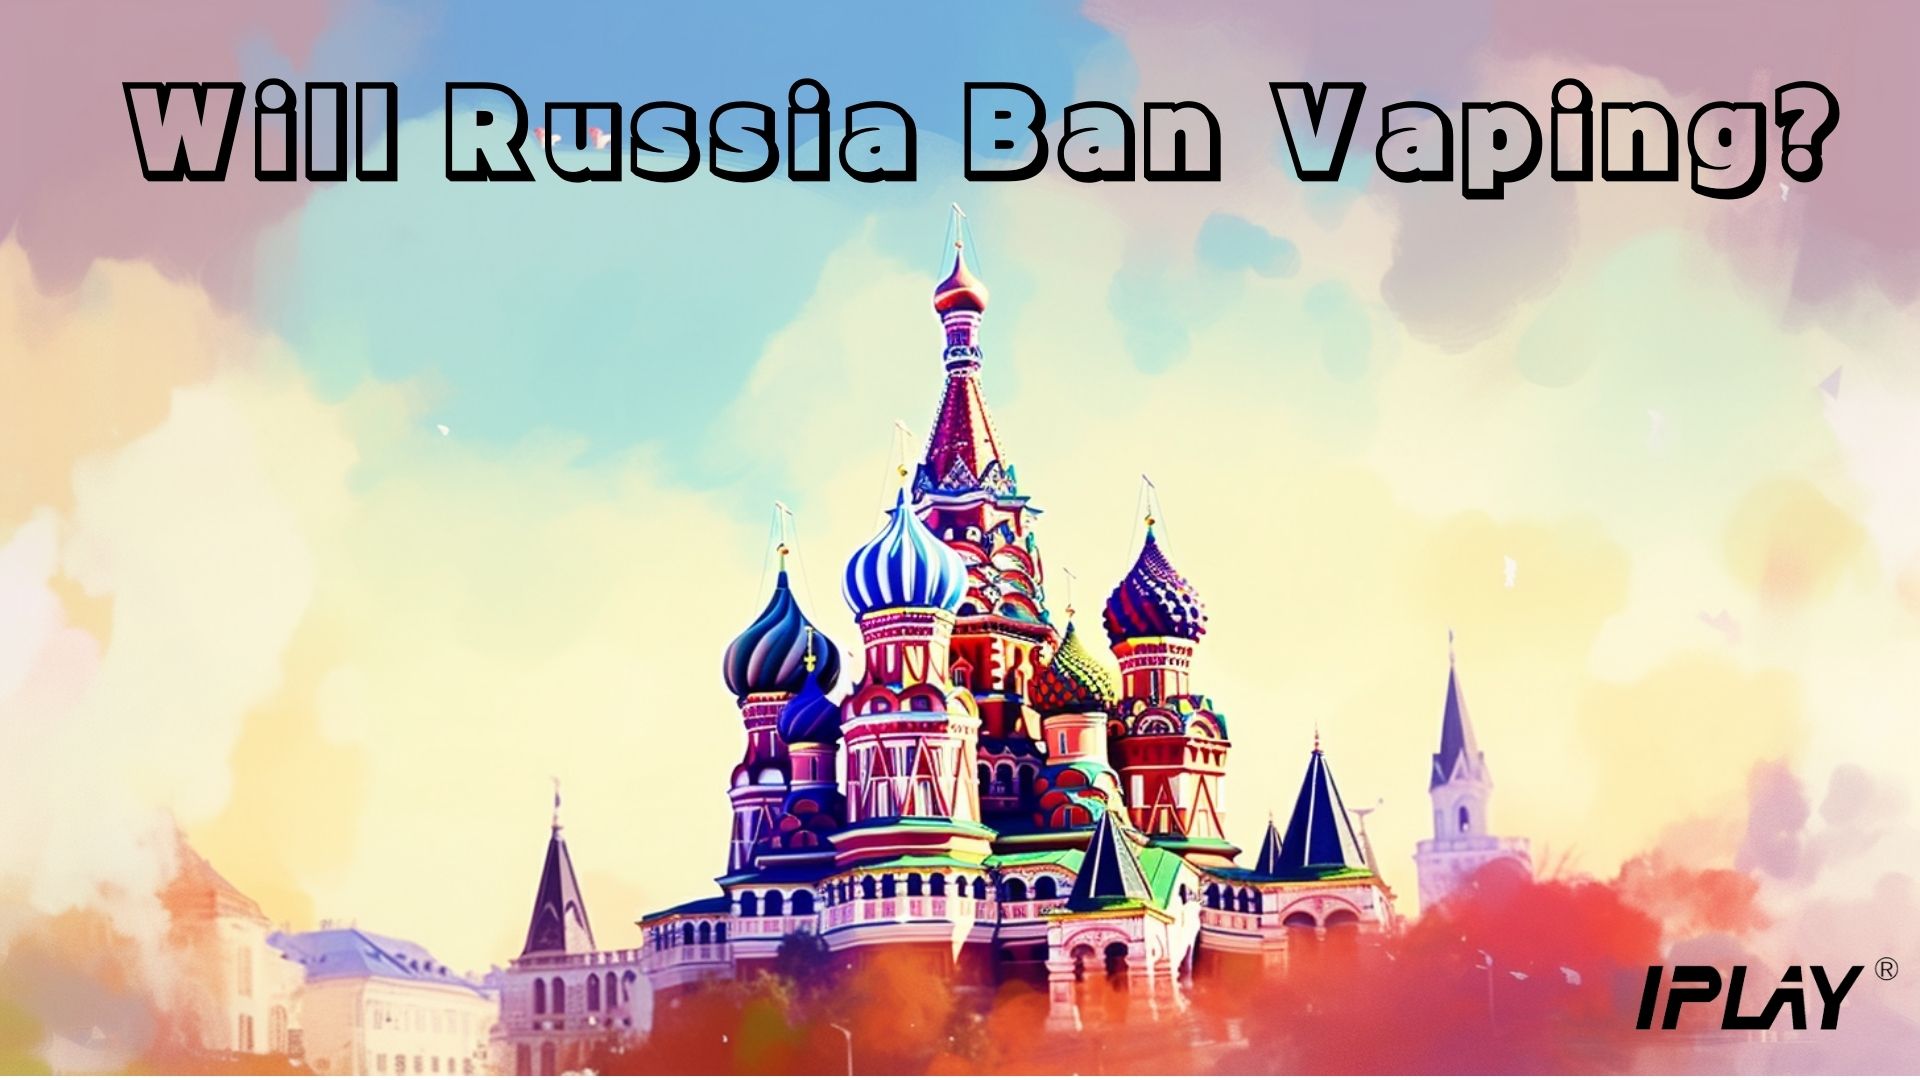 Moskva zakáže vaping